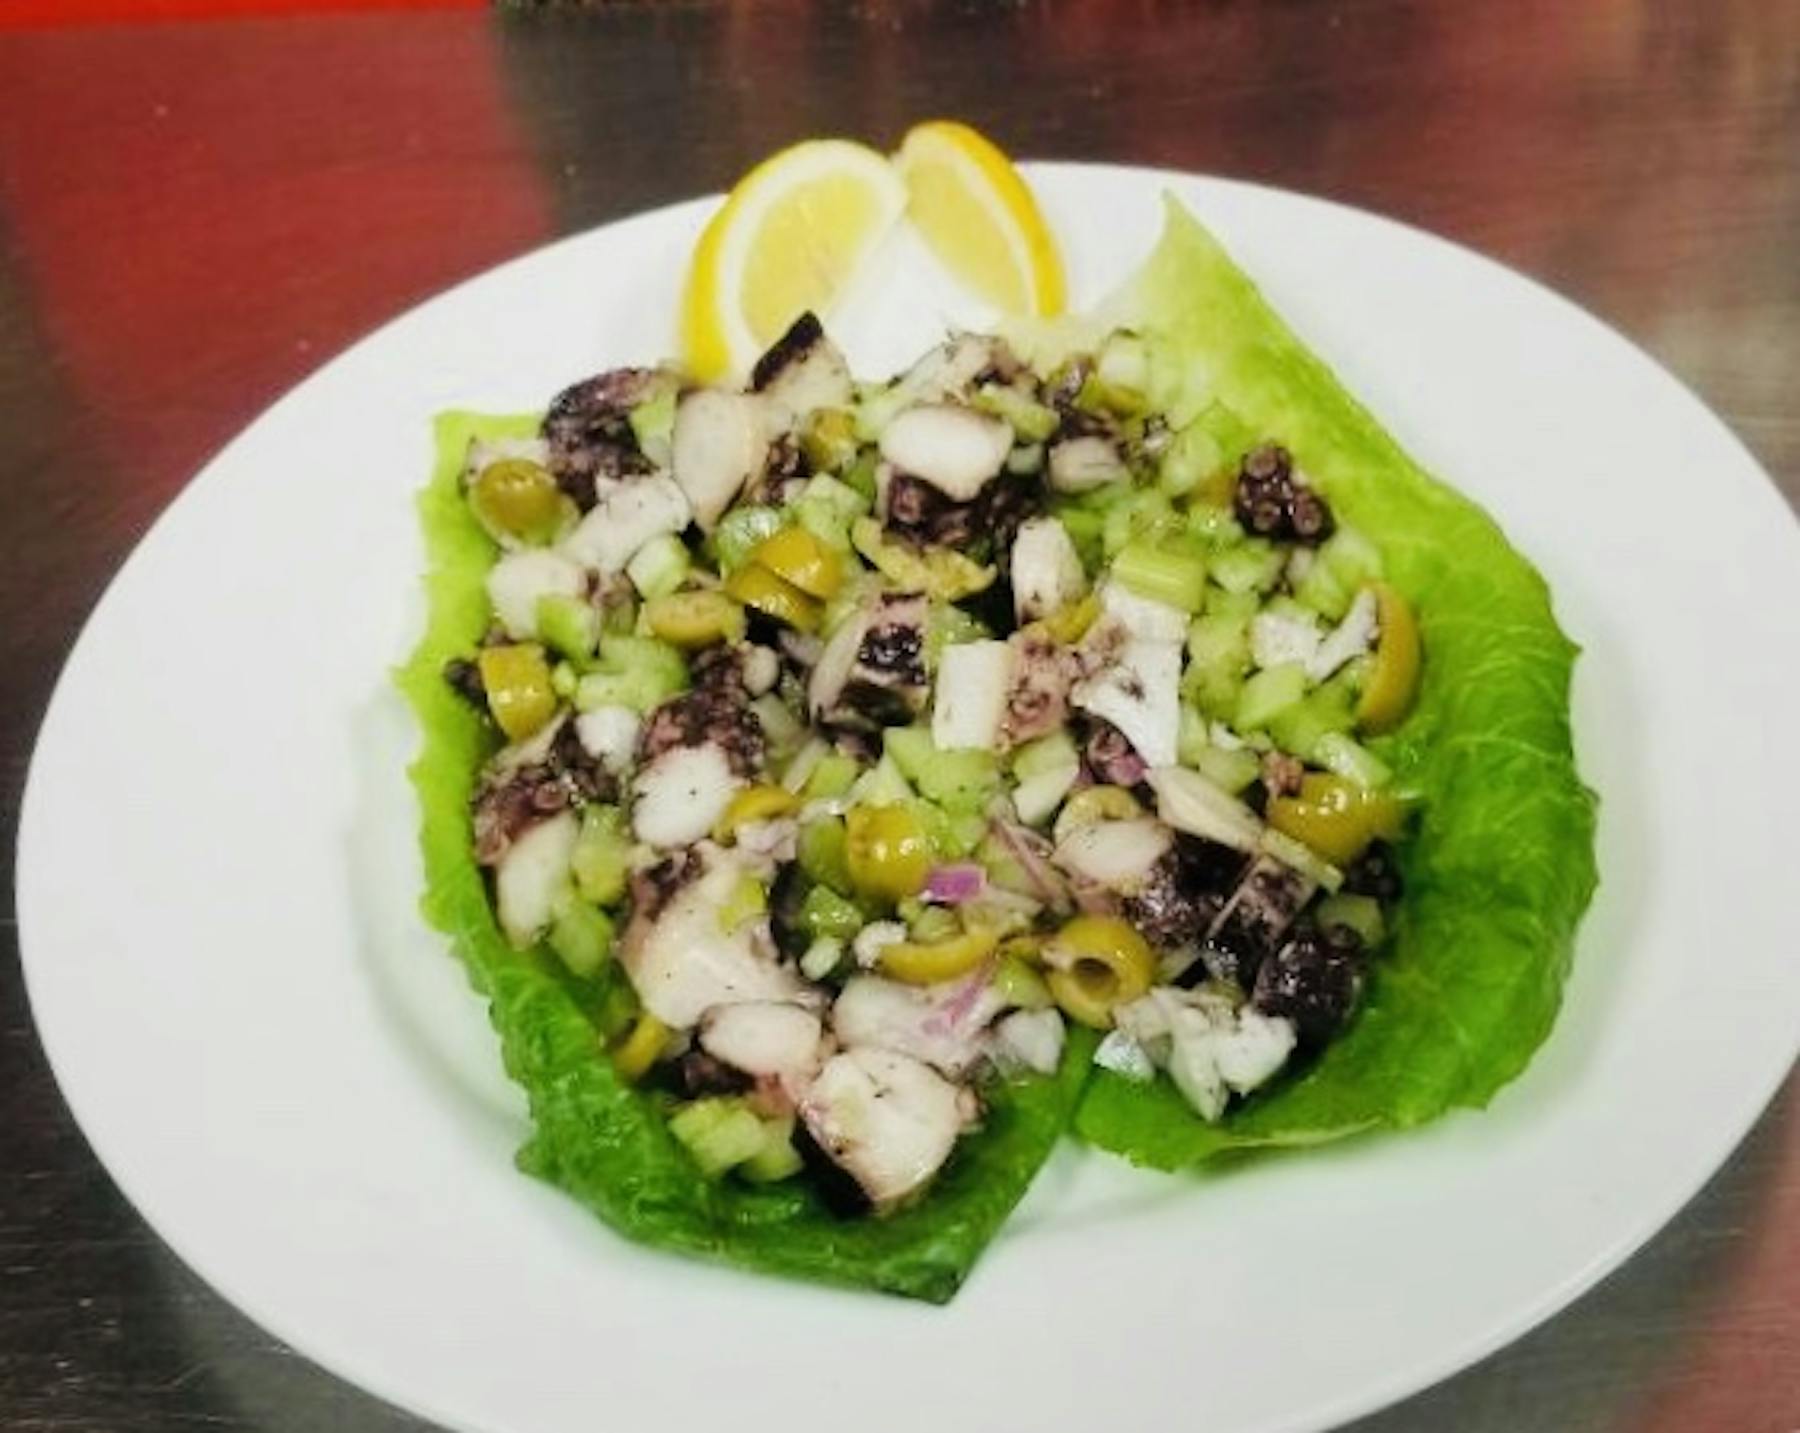 Pulpo Salad (Octopus)